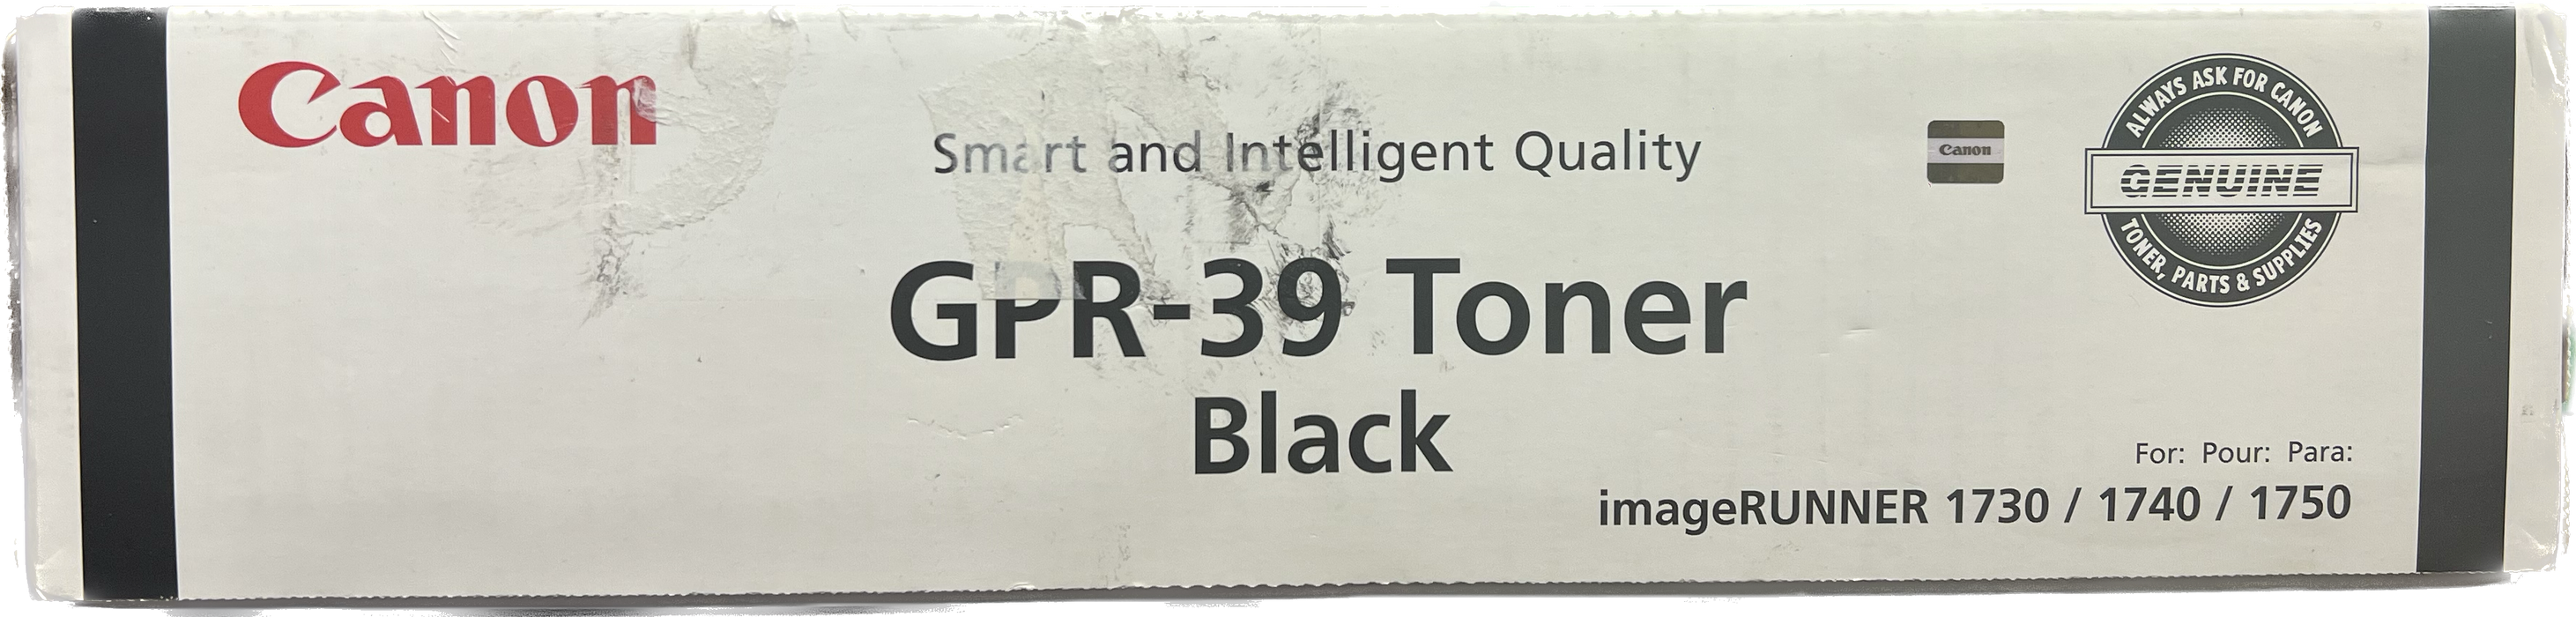 Genuine Canon Black Toner Cartridge | 2787B003 | GPR-39K